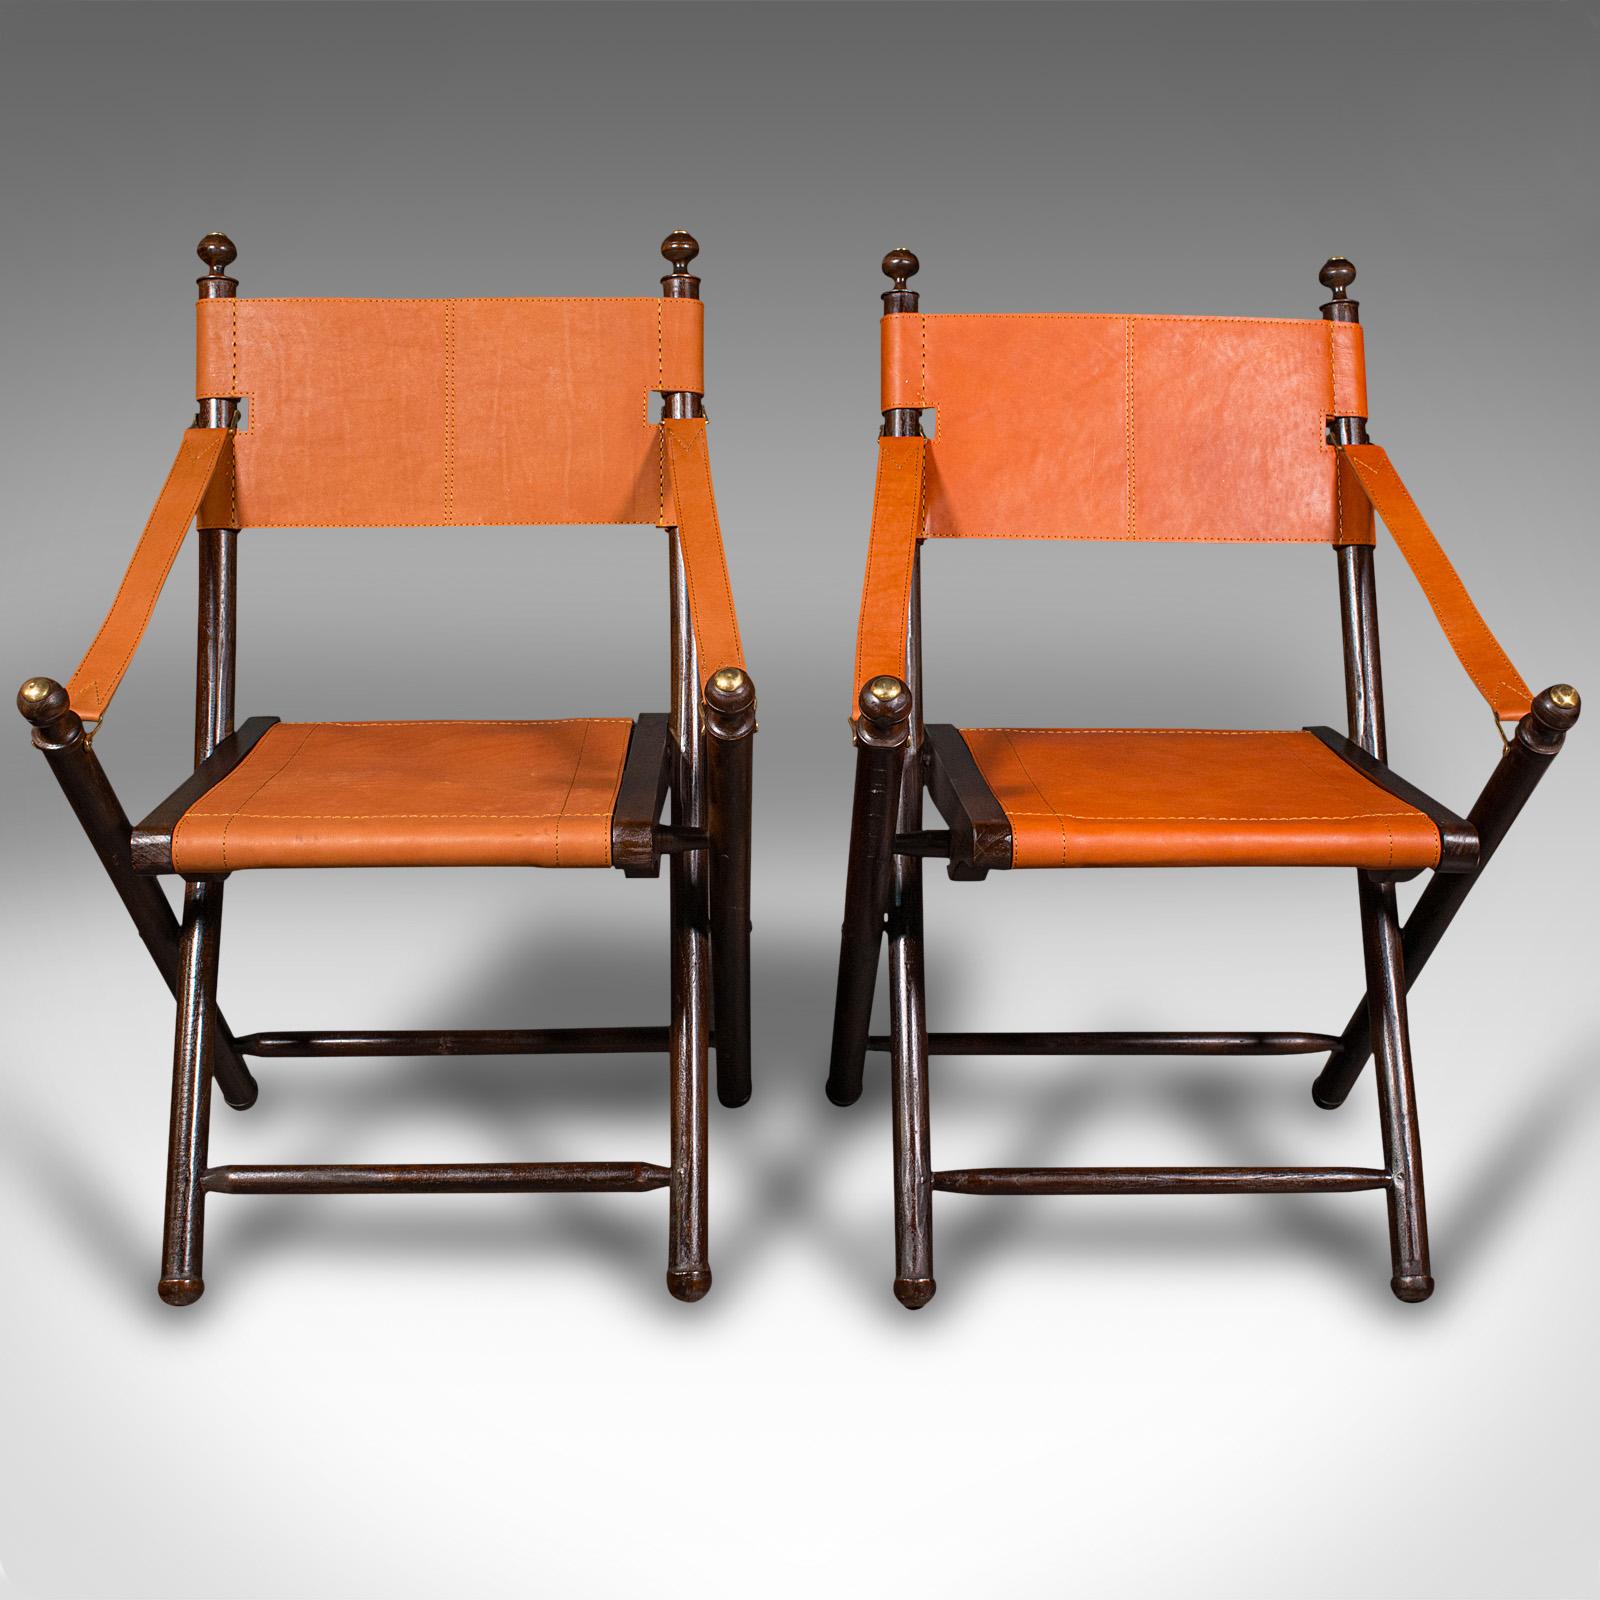 
Il s'agit d'une paire de chaises de véranda contemporaines. Siège d'orangerie ou de jardin pliant en pin et cuir de style colonial anglais.

Des chaises très originales dans le style des réalisateurs pliants
Présenté en très bon état
Cadre en pin